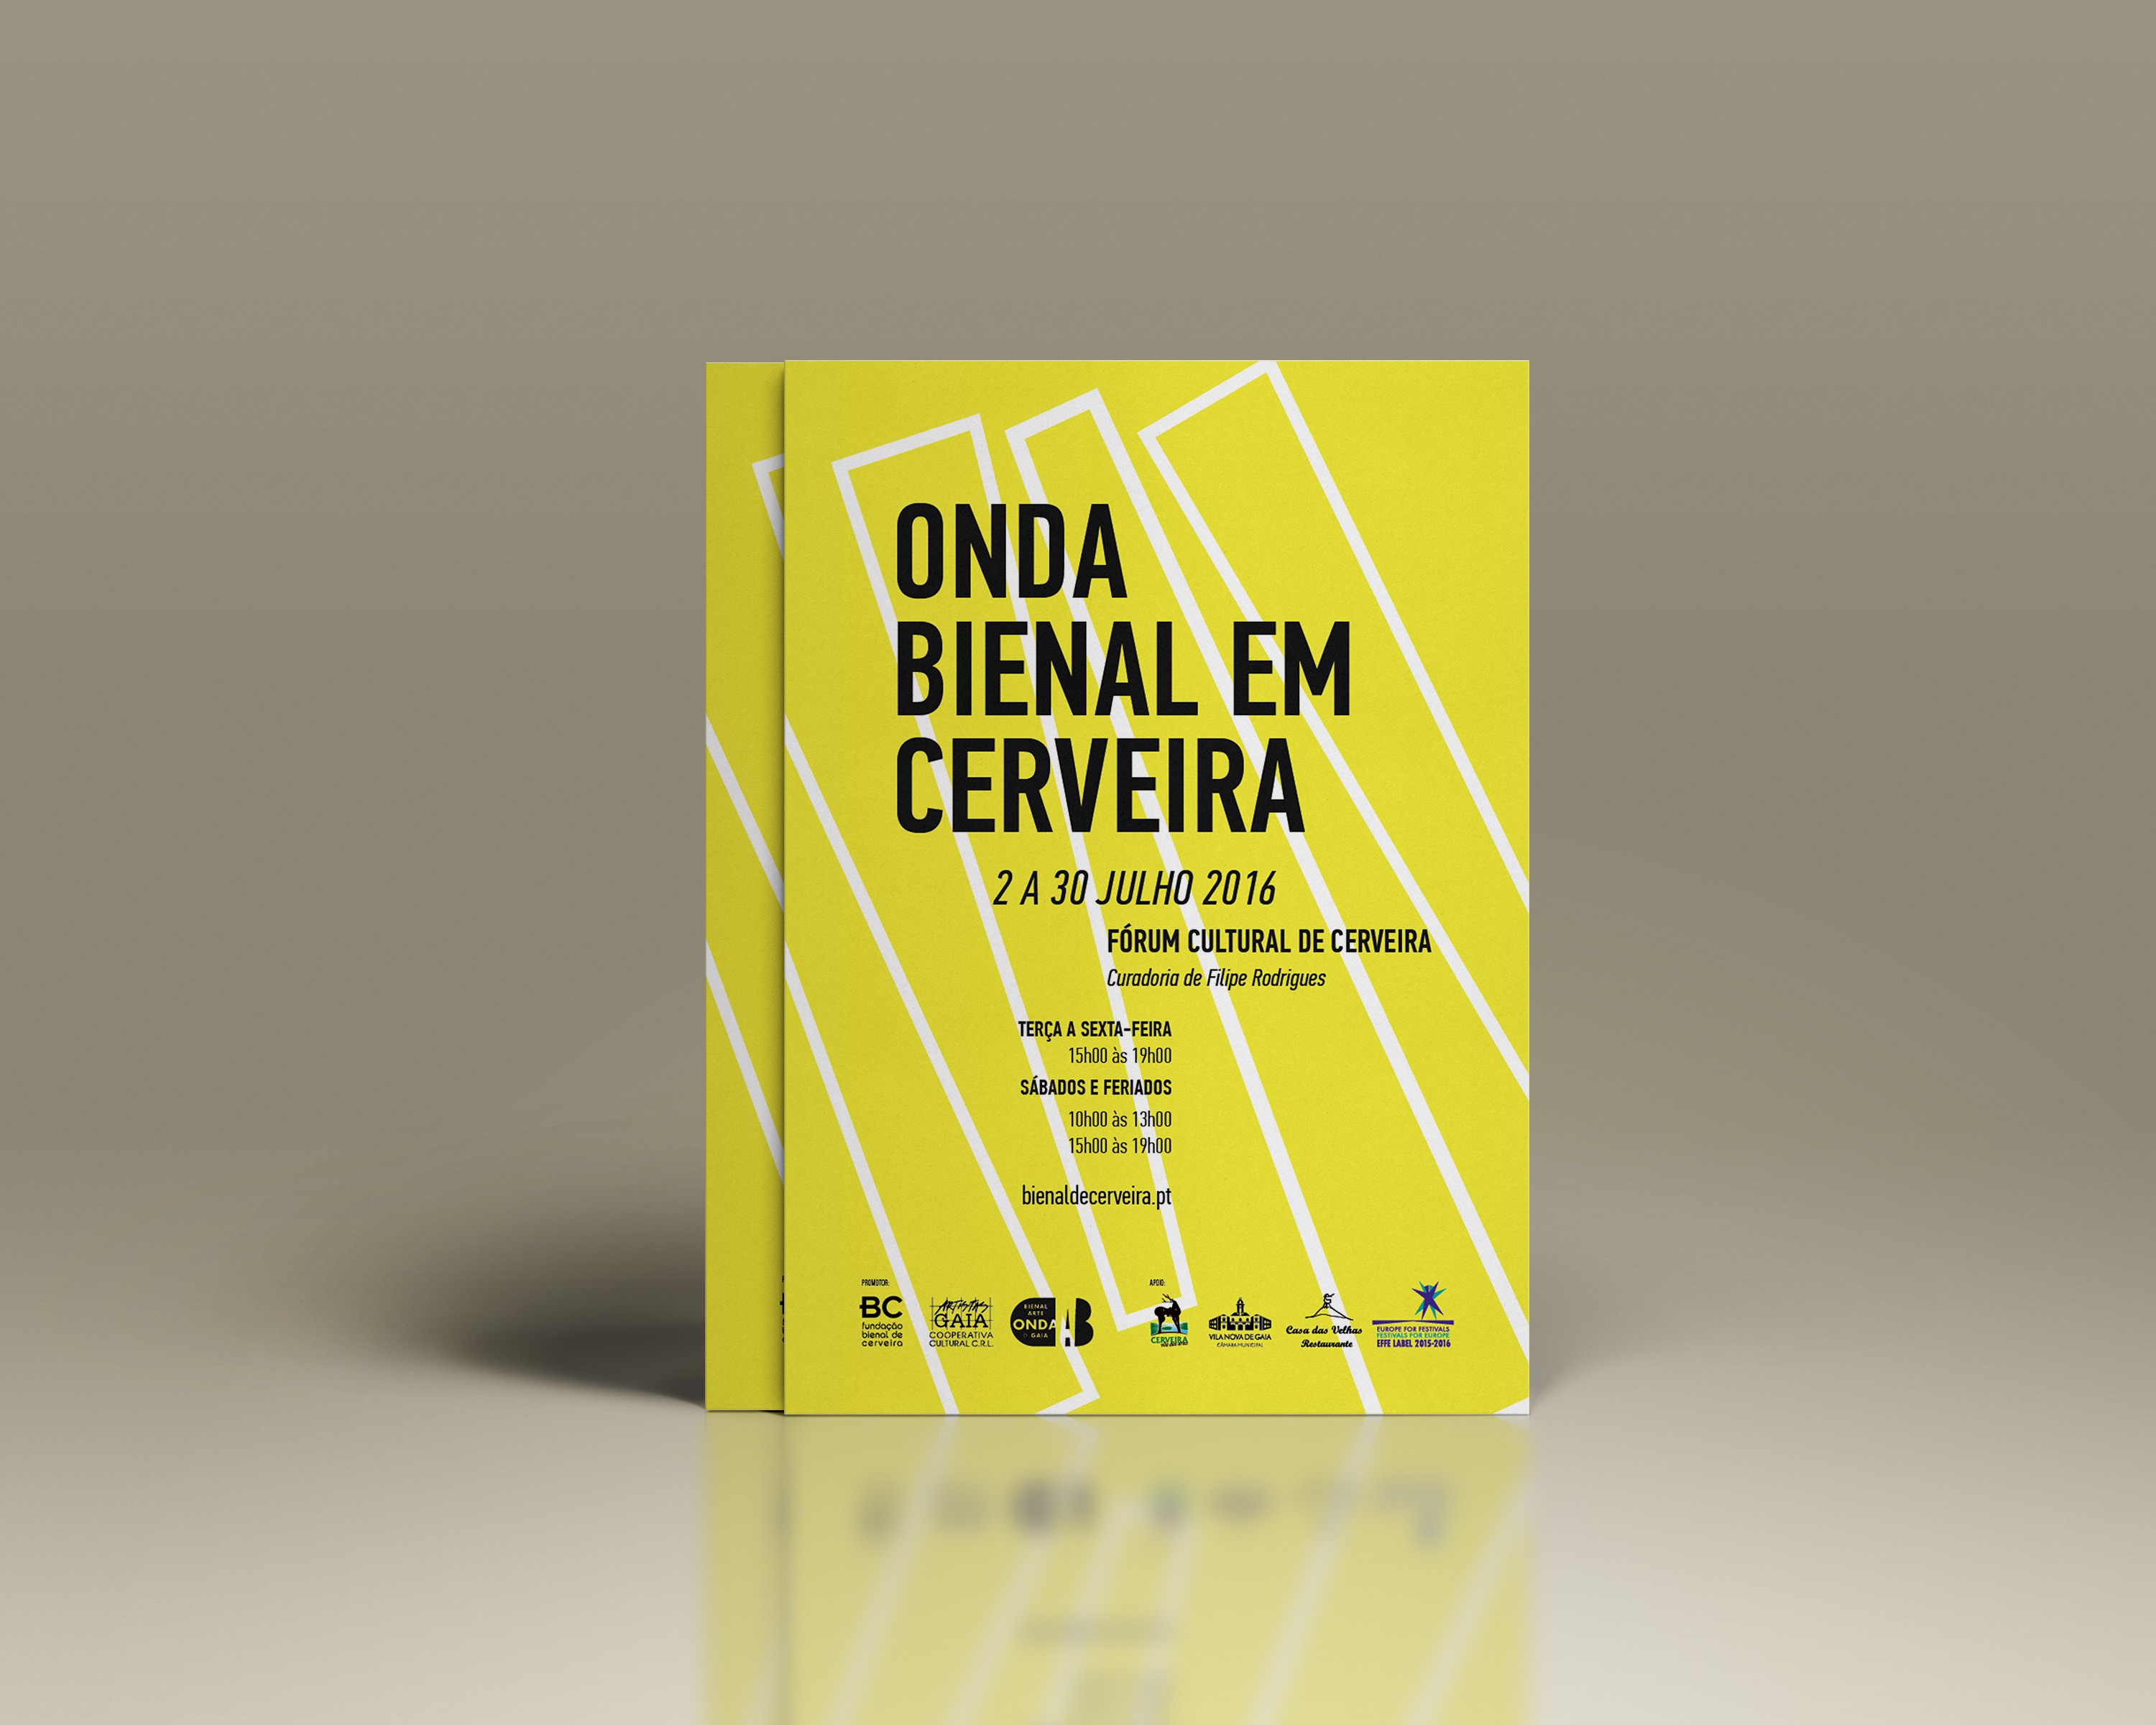 Flyer for Fundação Bienal de Arte de Cerveira